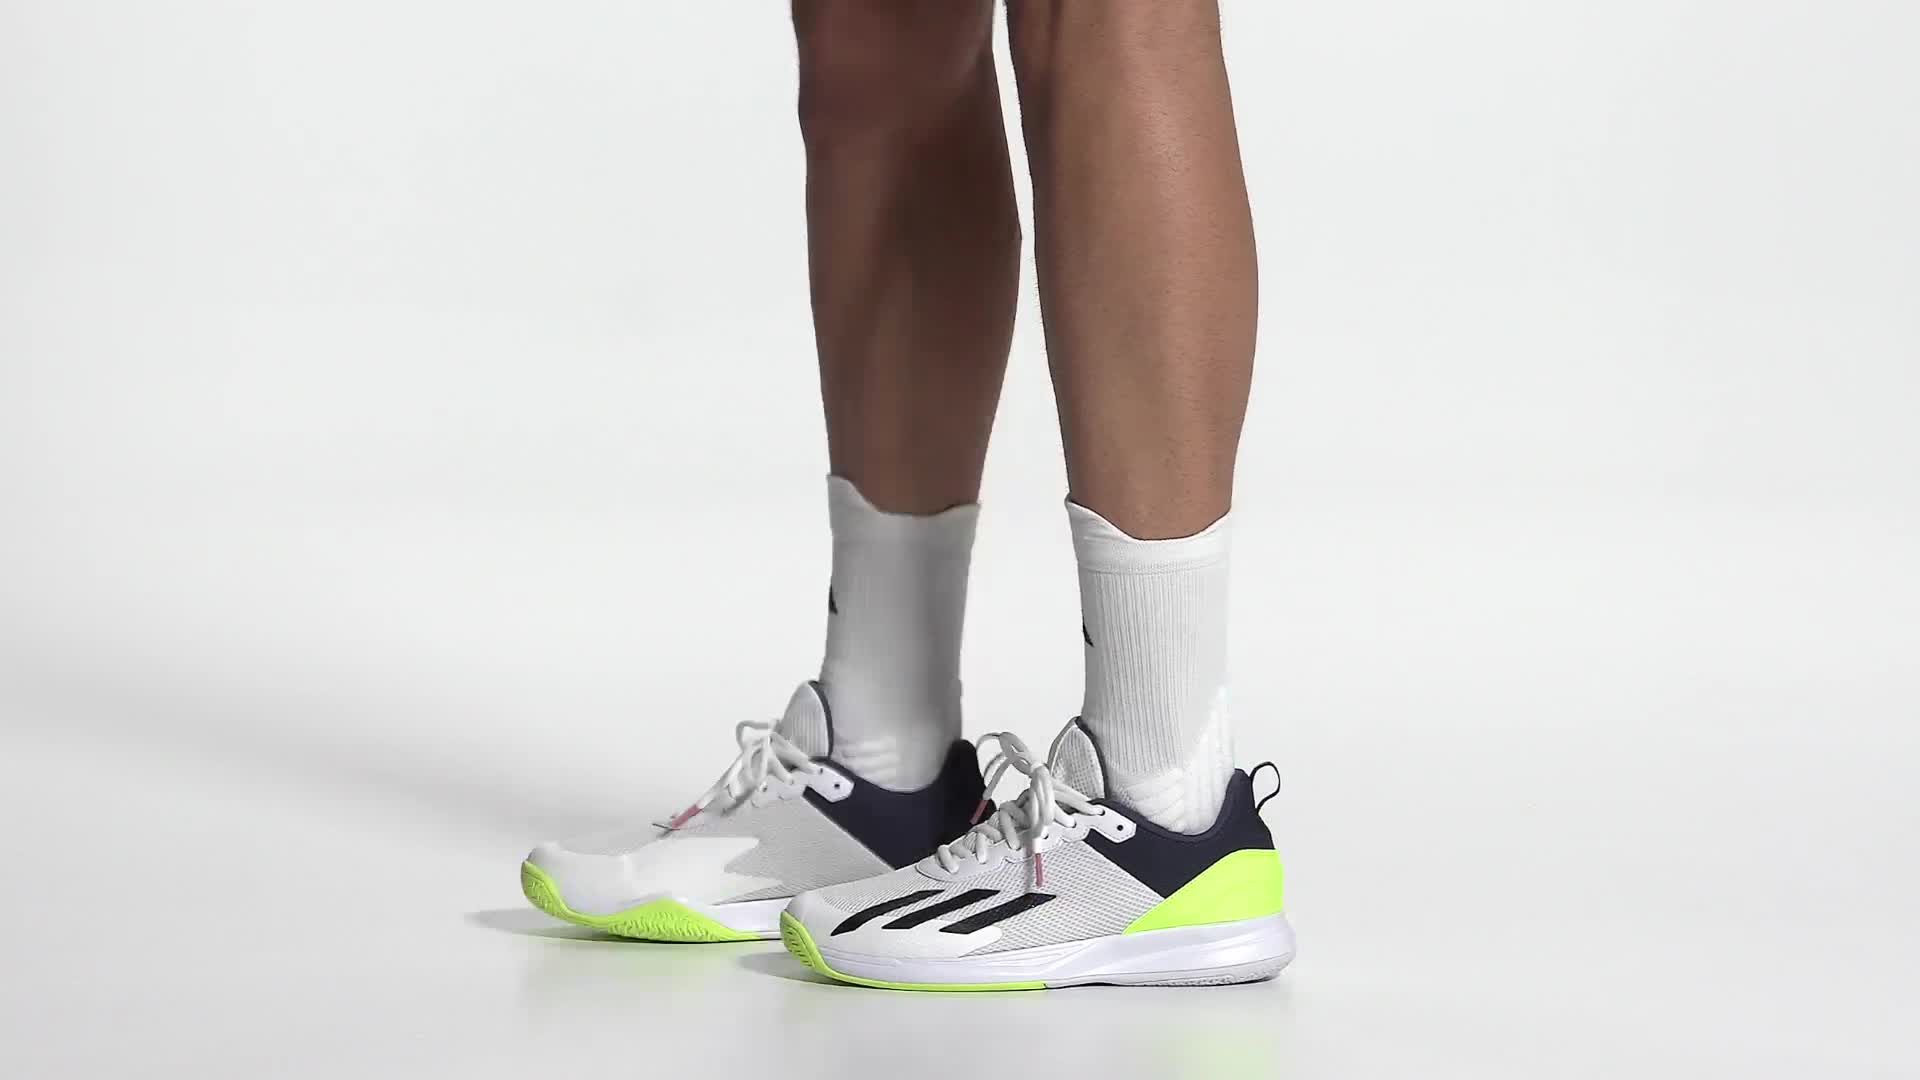 adidas 'Ultraboost Ren Zhe' Sneakers Schwarz - COMPRESSPORT Pro Racing  Socks V4.0 Run CREME DE MENTHE/PAPAYA PUNCH 7102 - CRM/PAPAYA PUN